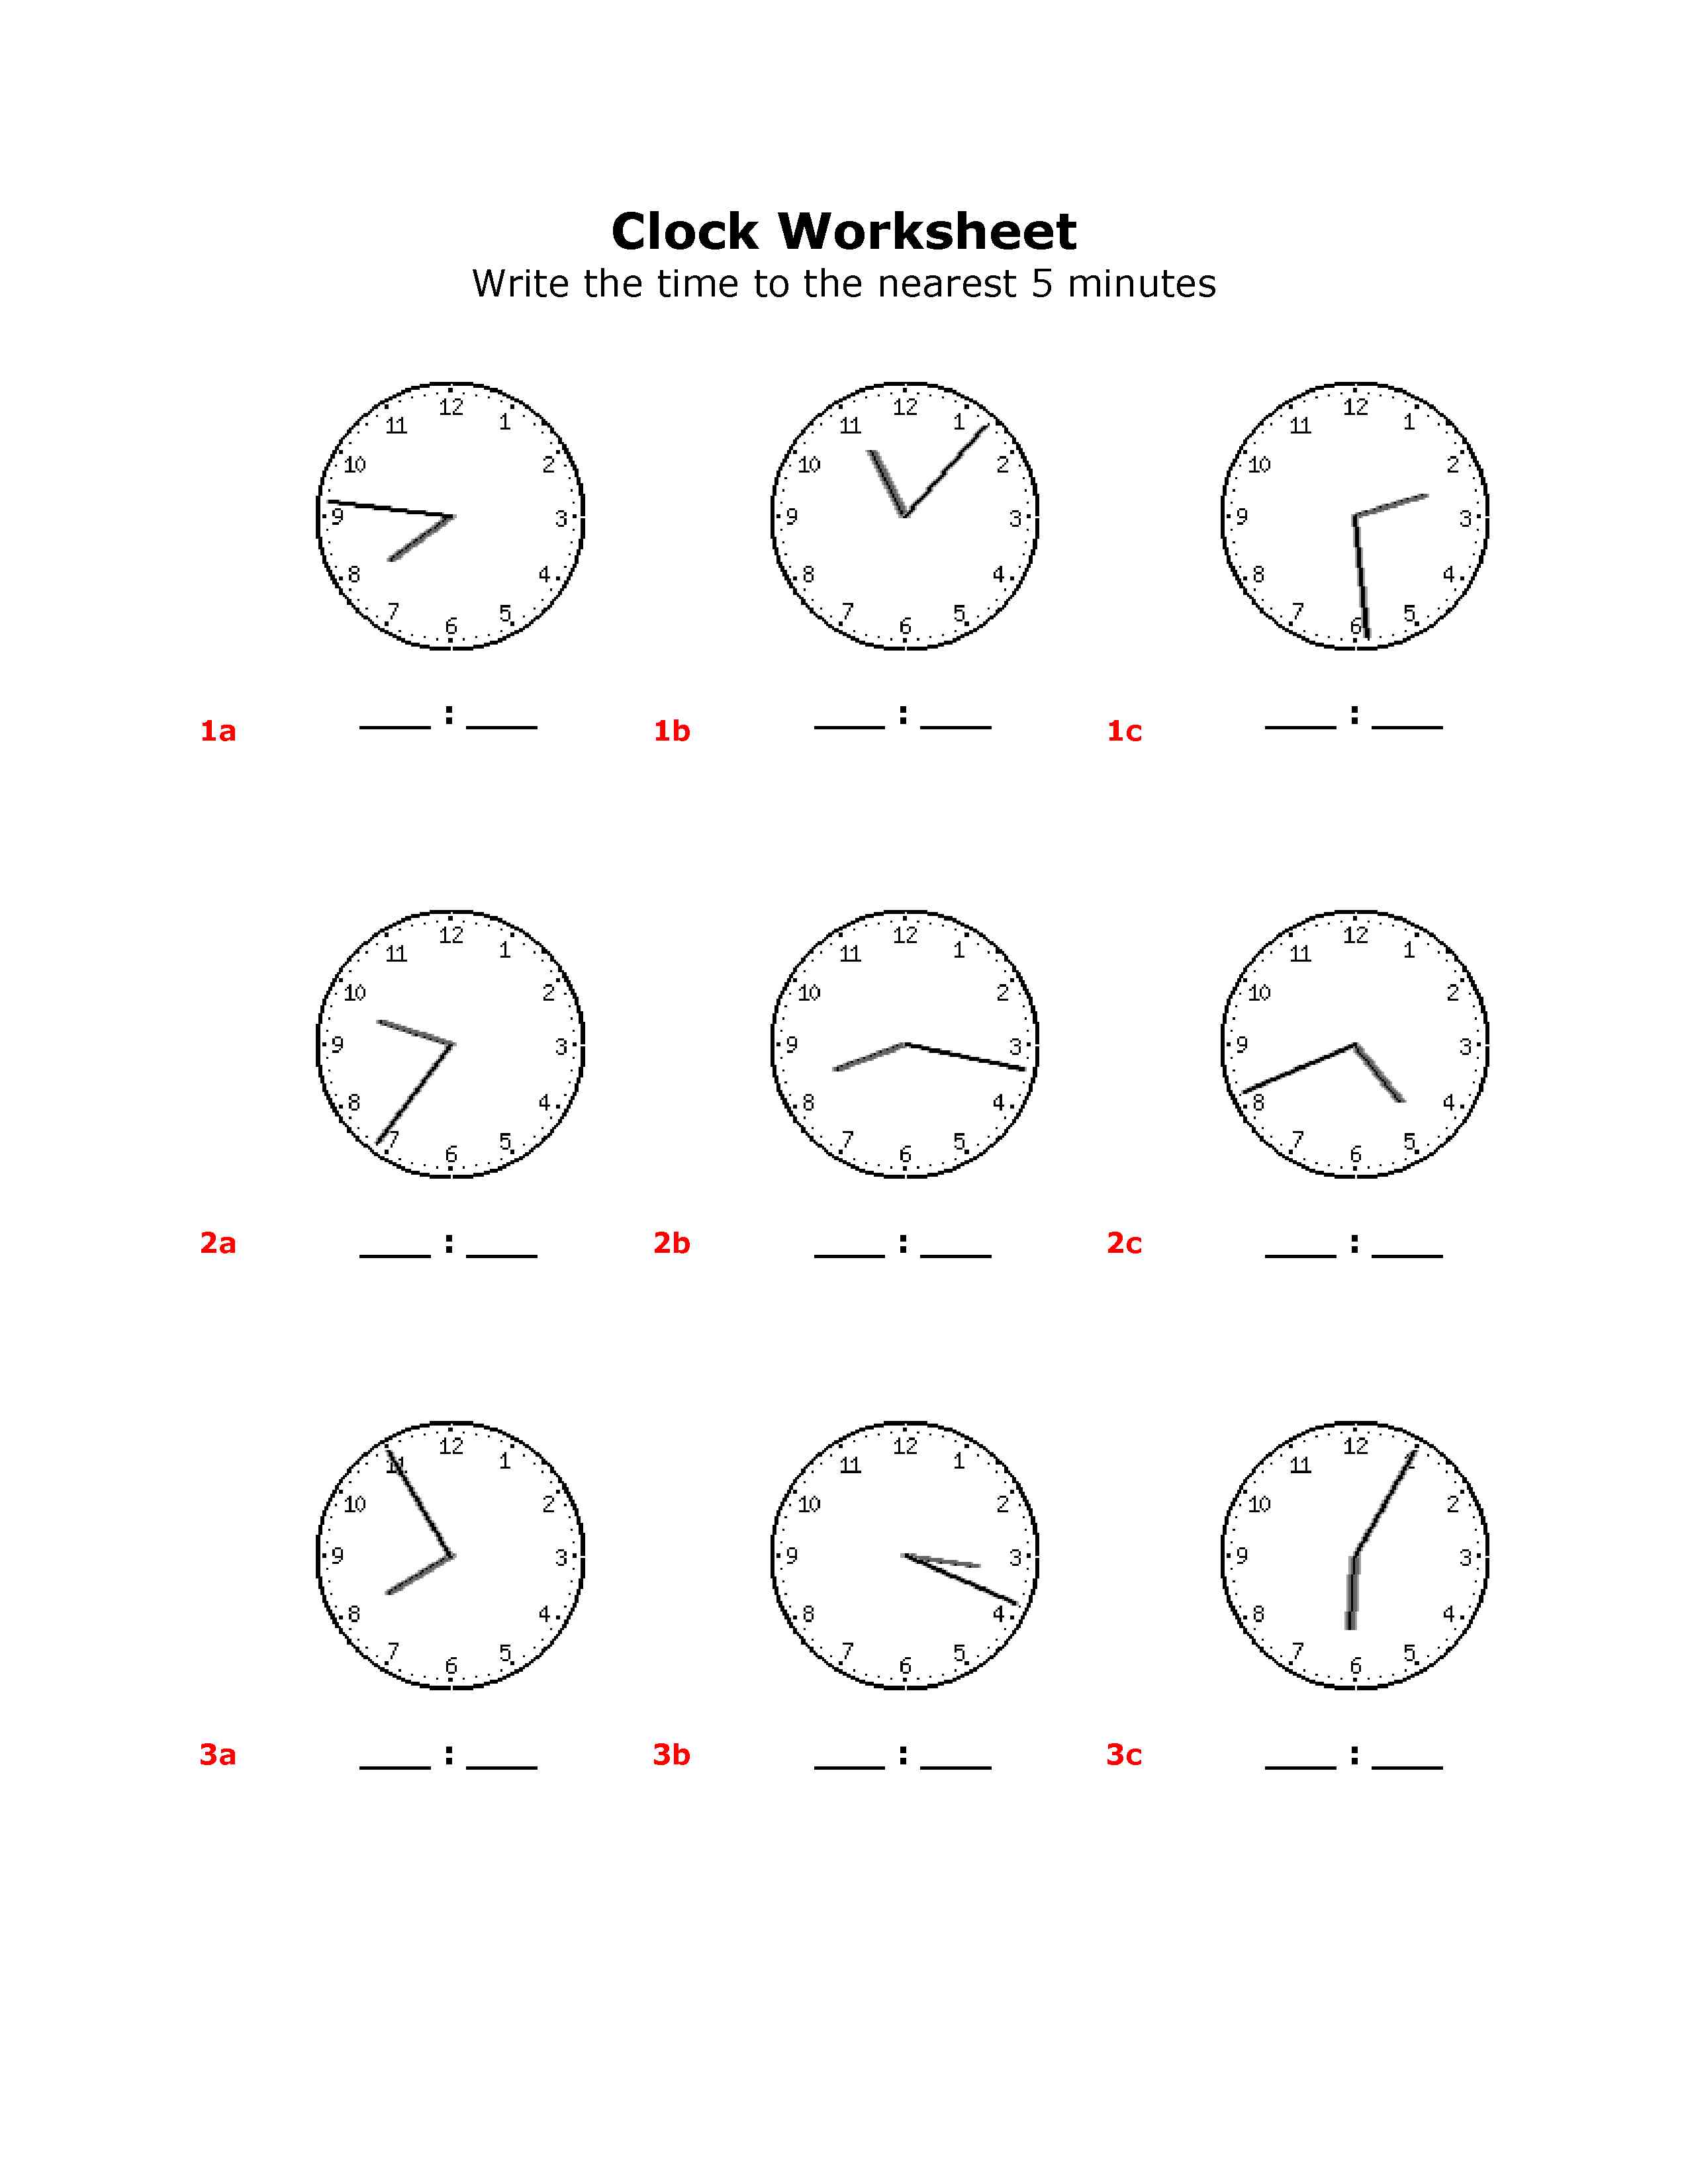 Clock Worksheet Category Page 3 - worksheeto.com